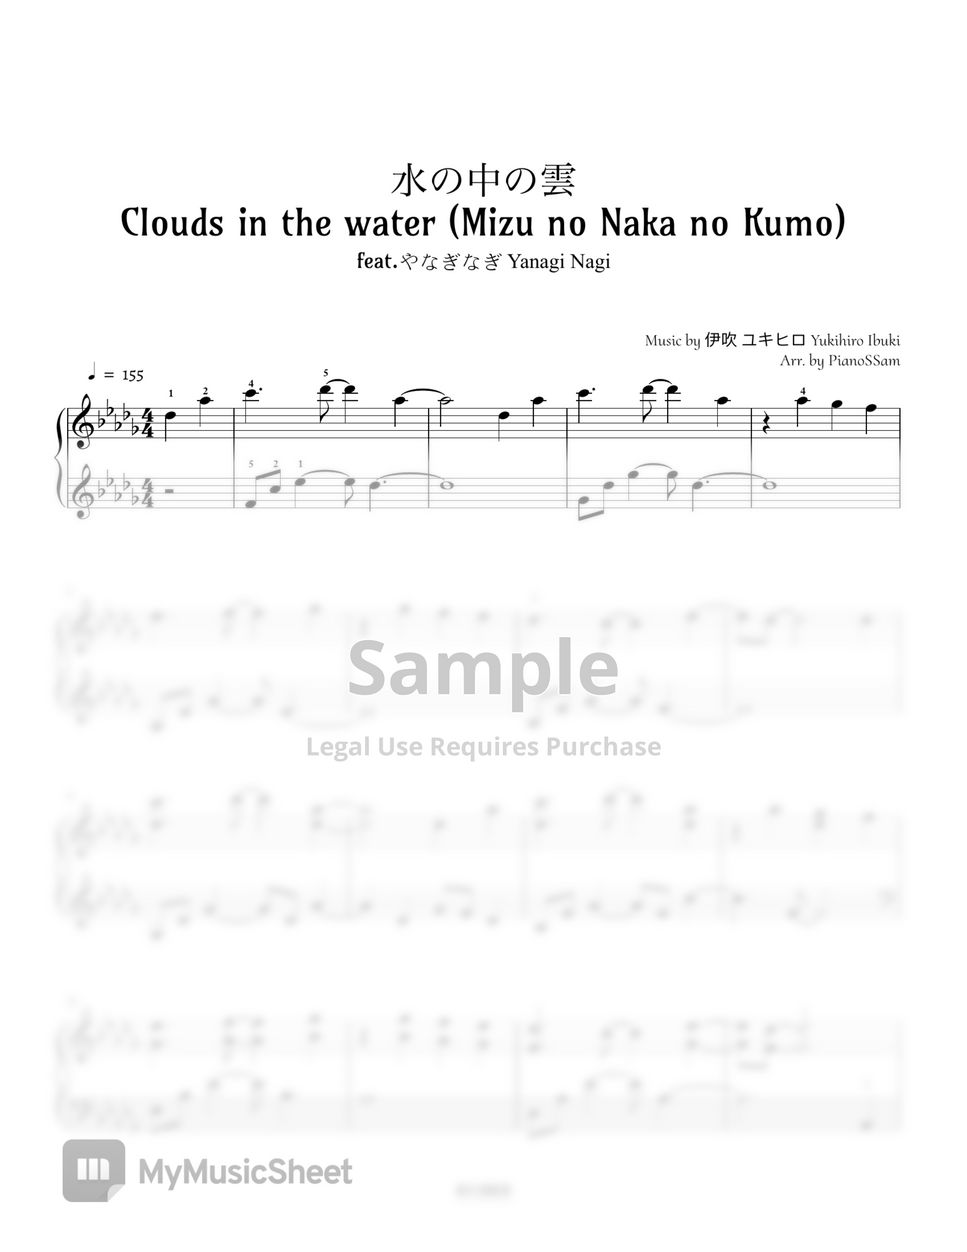 Yukihiro Ibuki - Clouds in the water (feat. やなぎなぎ Yanagi Nagi) by PianoSSam